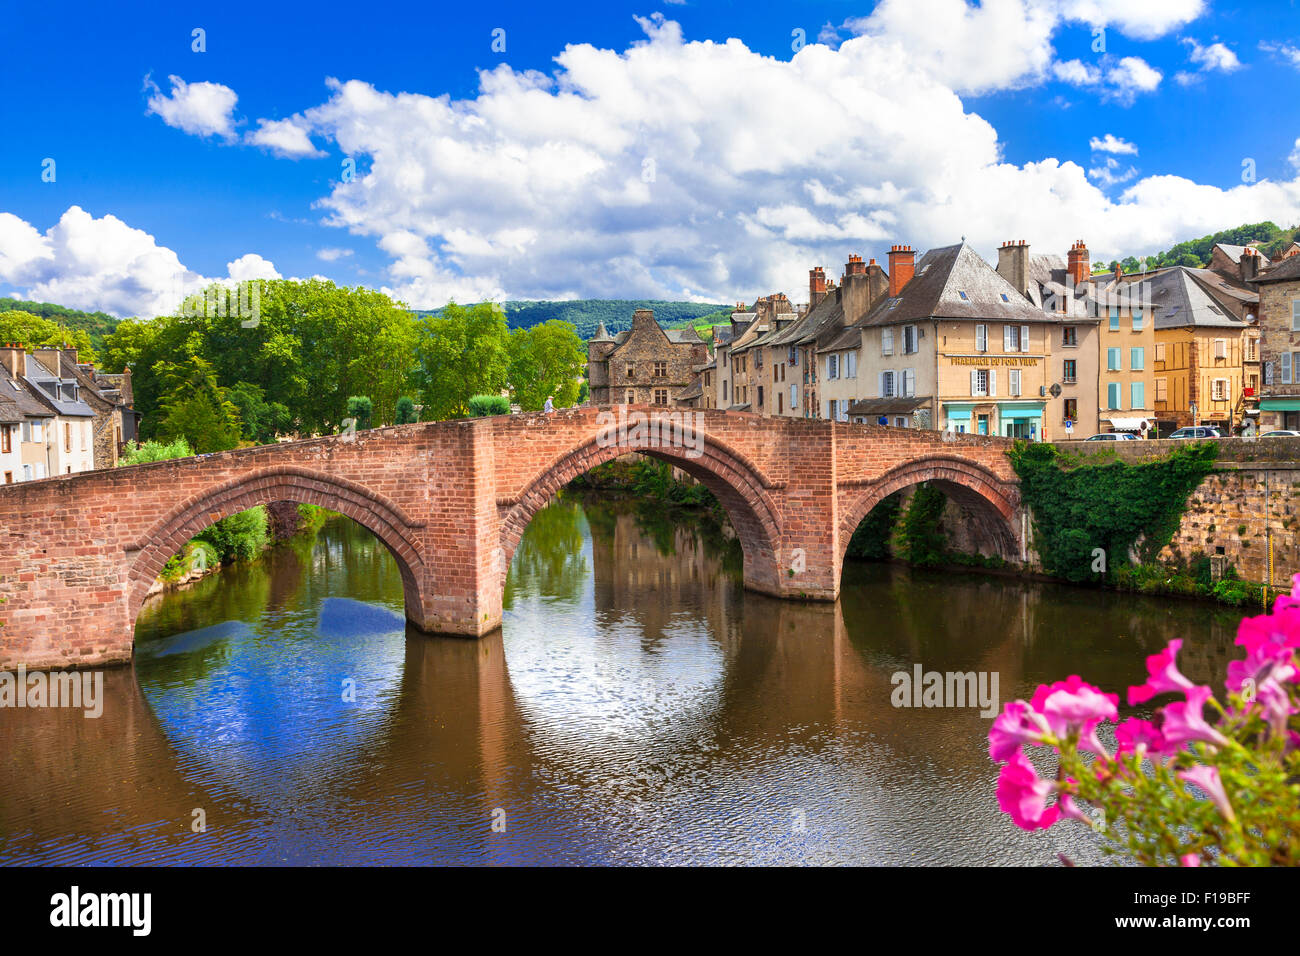 Espalion - un des plus beaux villages de France et site du patrimoine mondial Banque D'Images